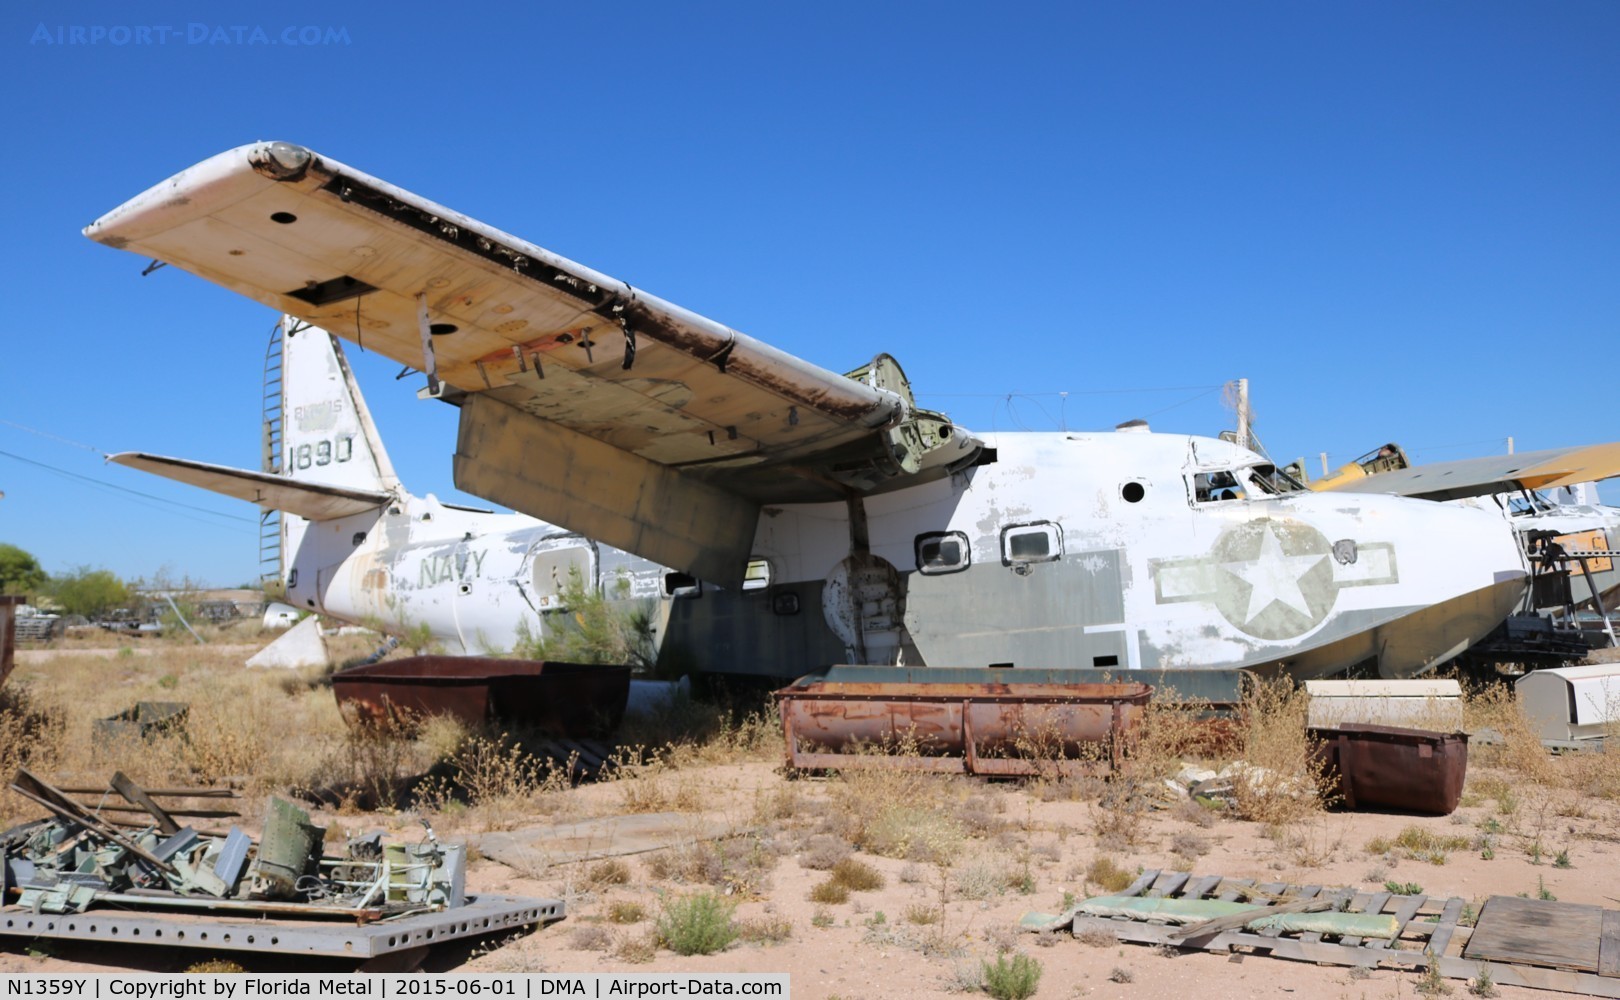 N1359Y, Grumman UF-1 Albatross (Model G-64) C/N 131890 (233), Grumman UF-2 in a private boneyard near Davis Monthan